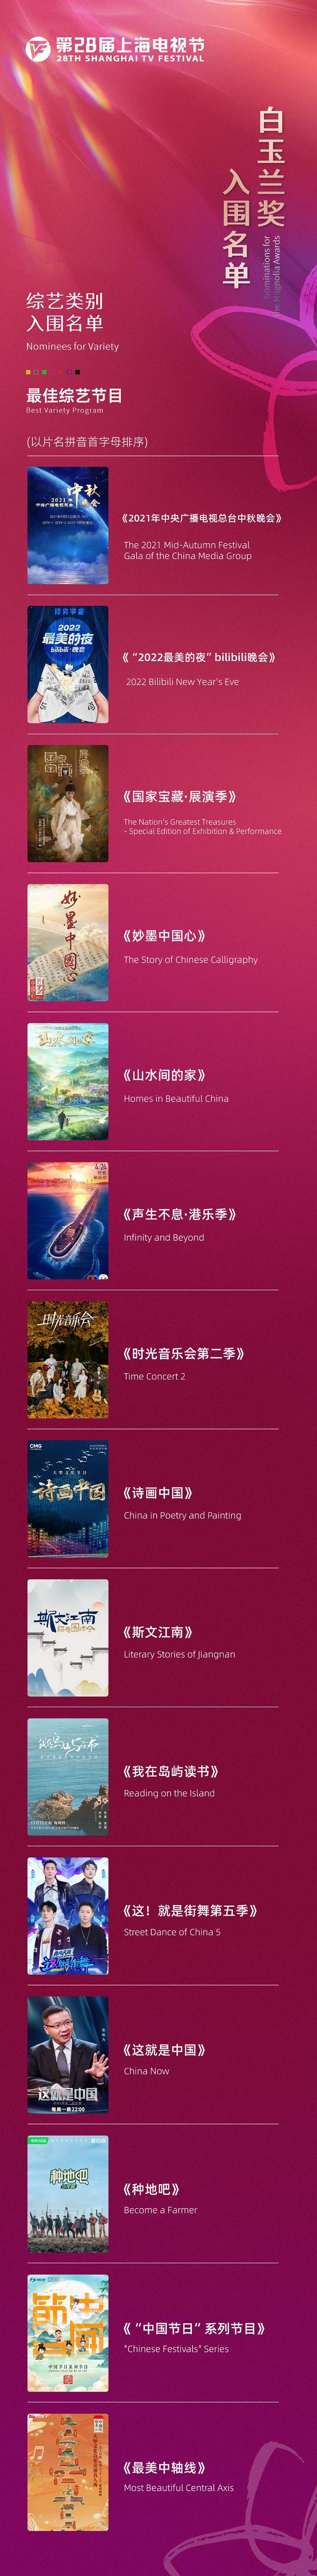 第二十八届上海电视节白玉兰奖入围名单公布